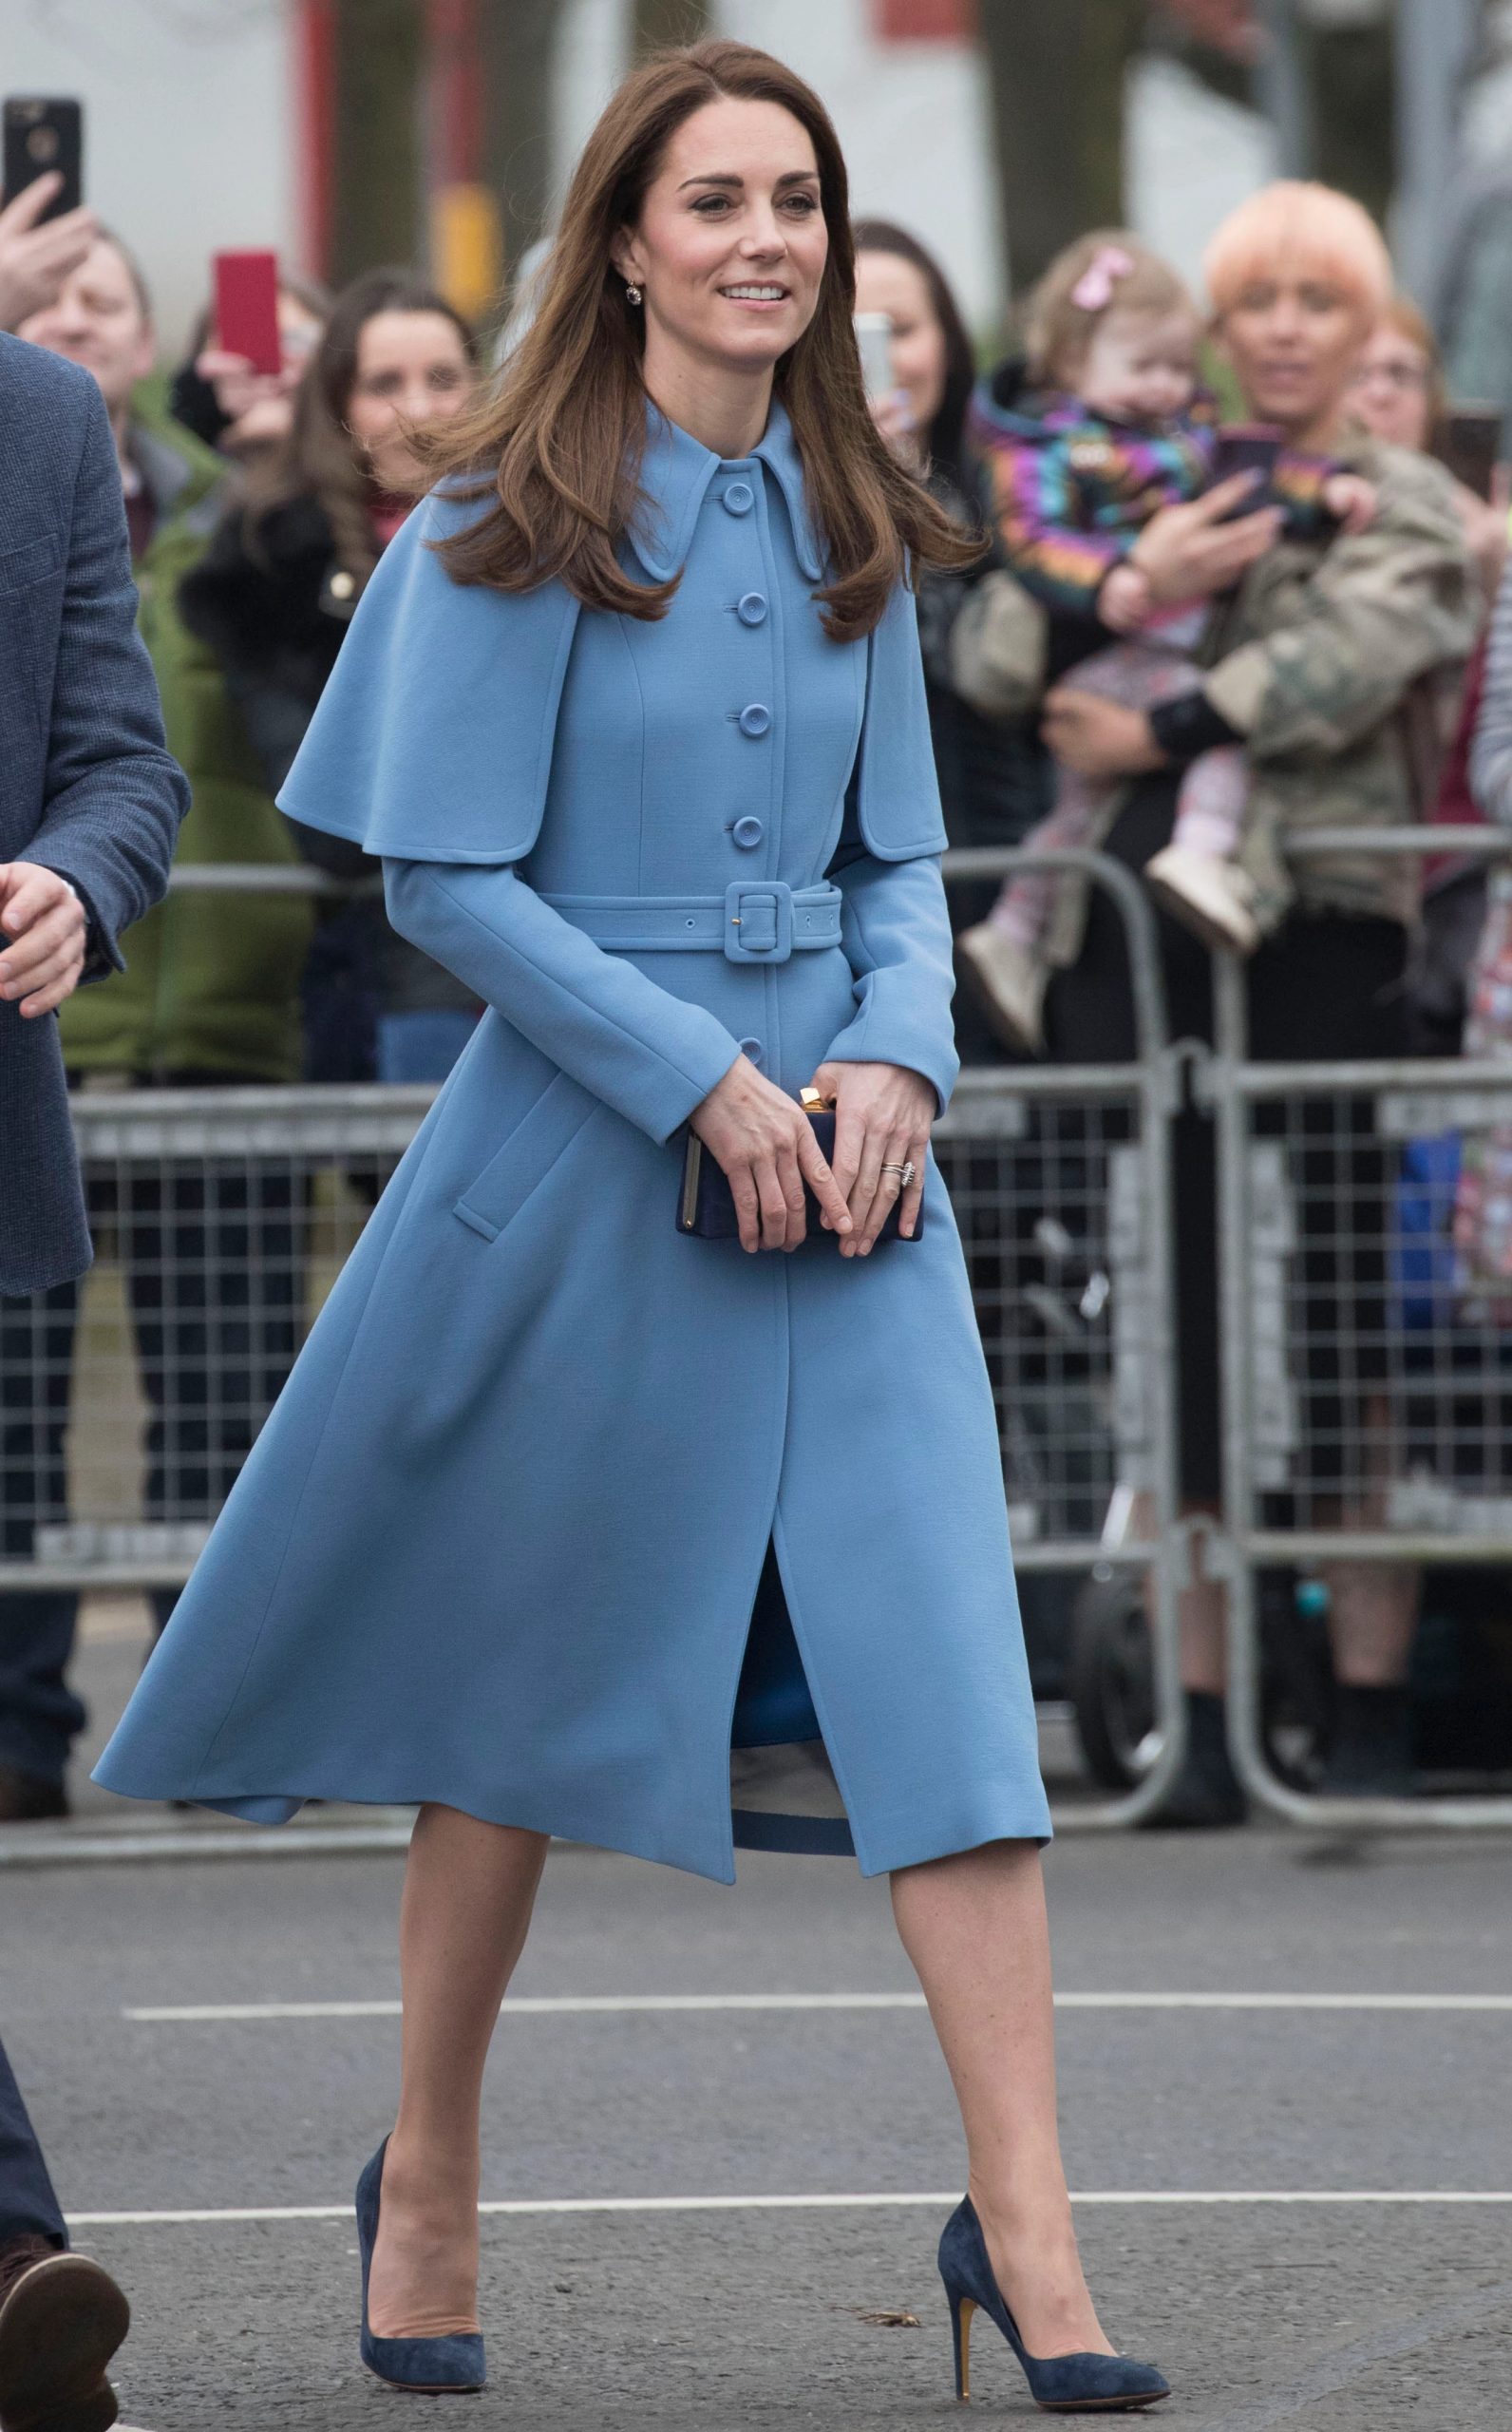 meo dien giay cao got cua cong nuong cambridge scaled - Hé lộ cách mang giày cao gót không đau chân của Công nương Kate Middleton